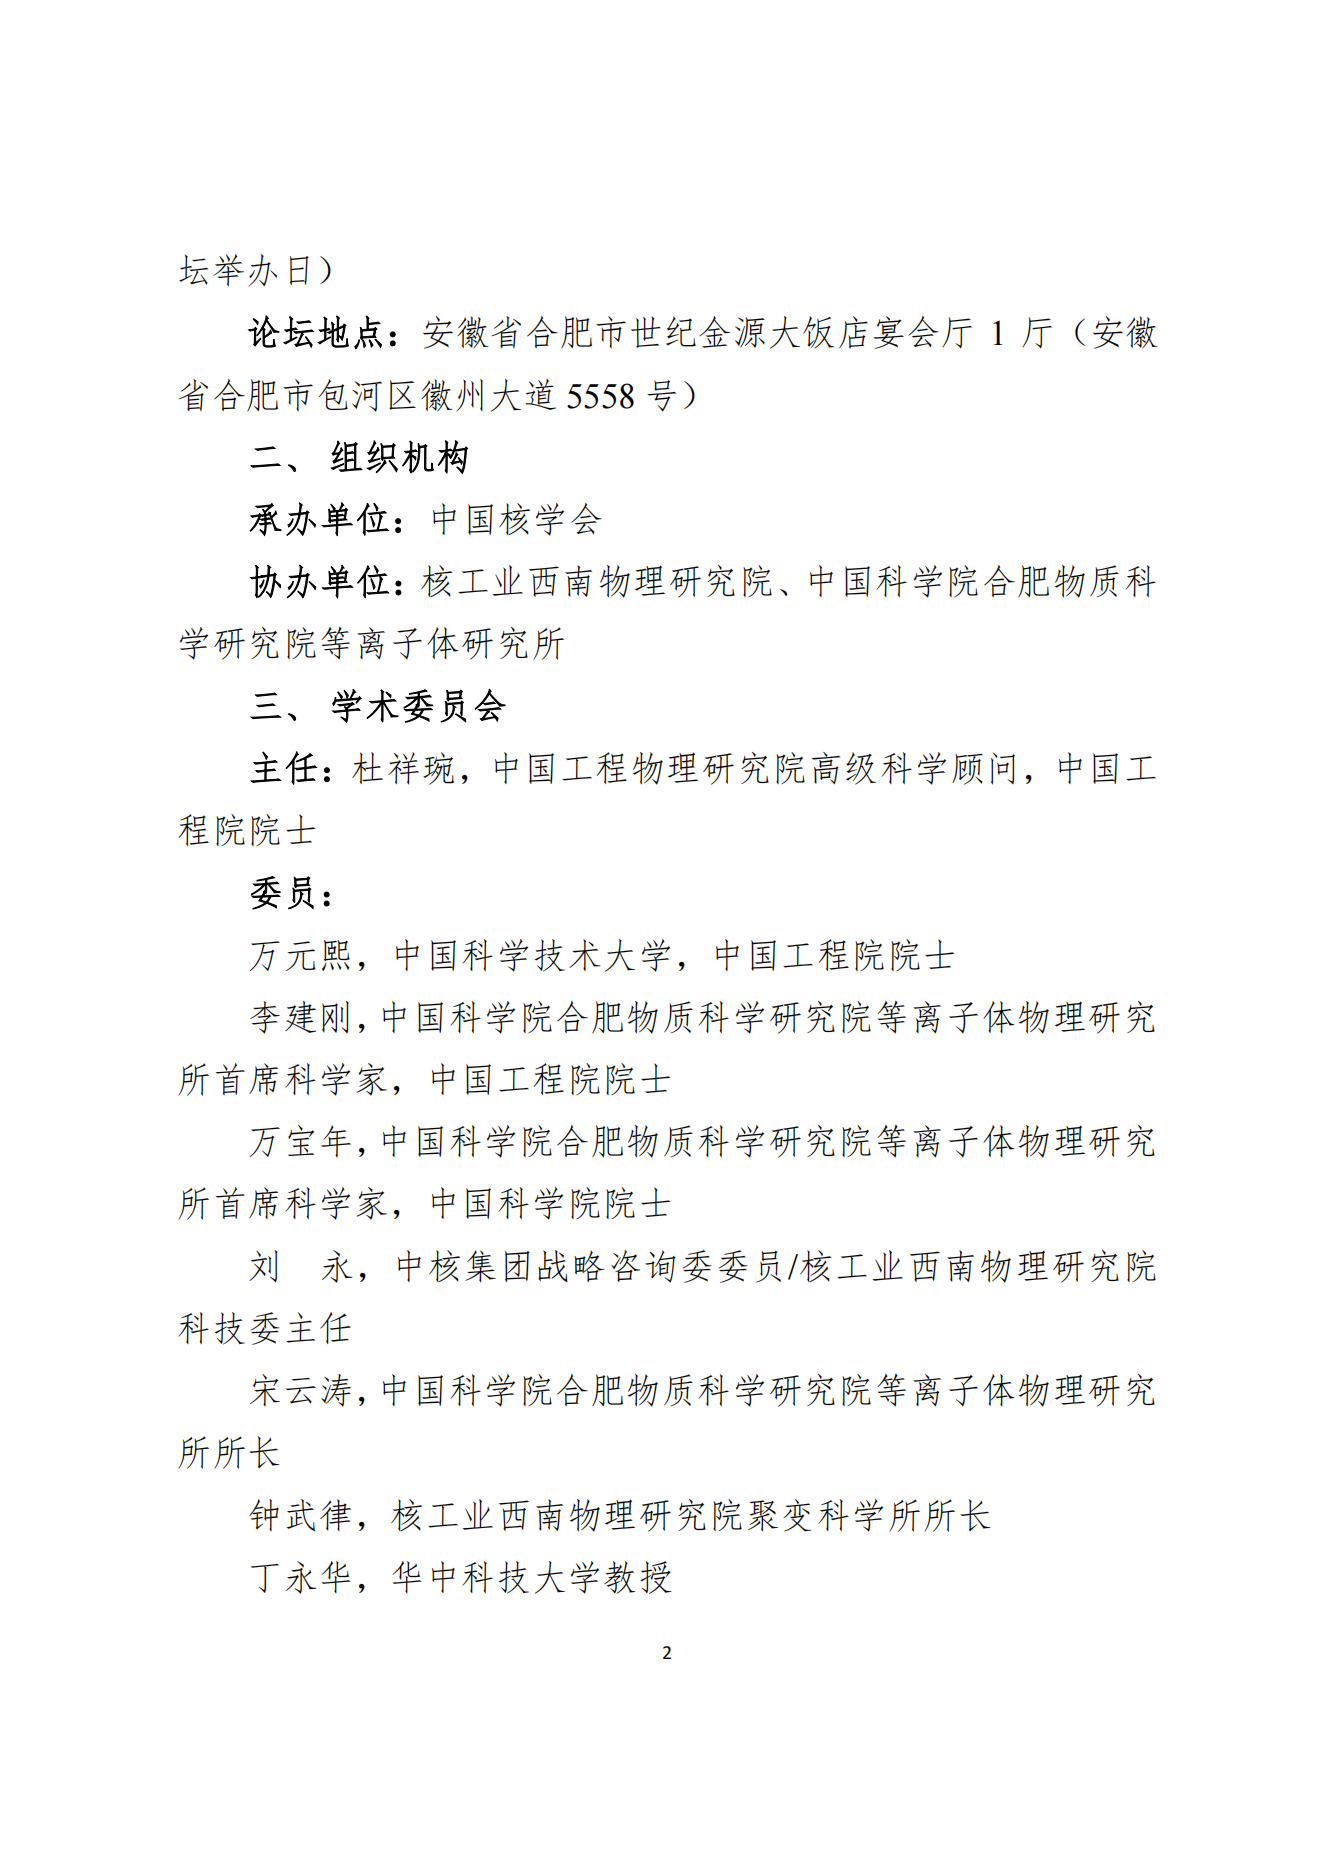 关于注册报名第二十五届中国科协年会“核能聚变点亮未来”论坛的通知(1)_01.png